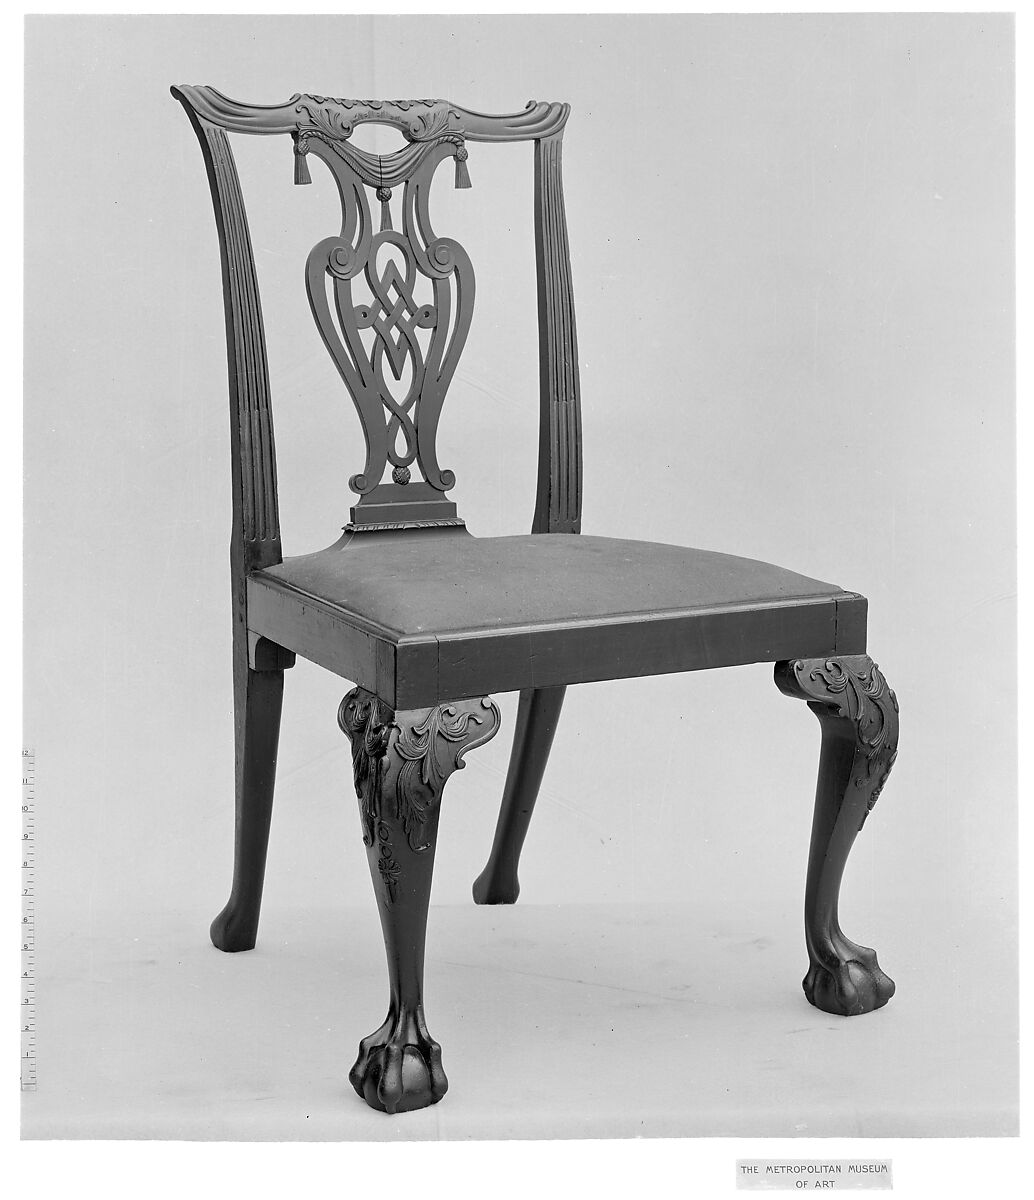 Chair, Mahogany, British 